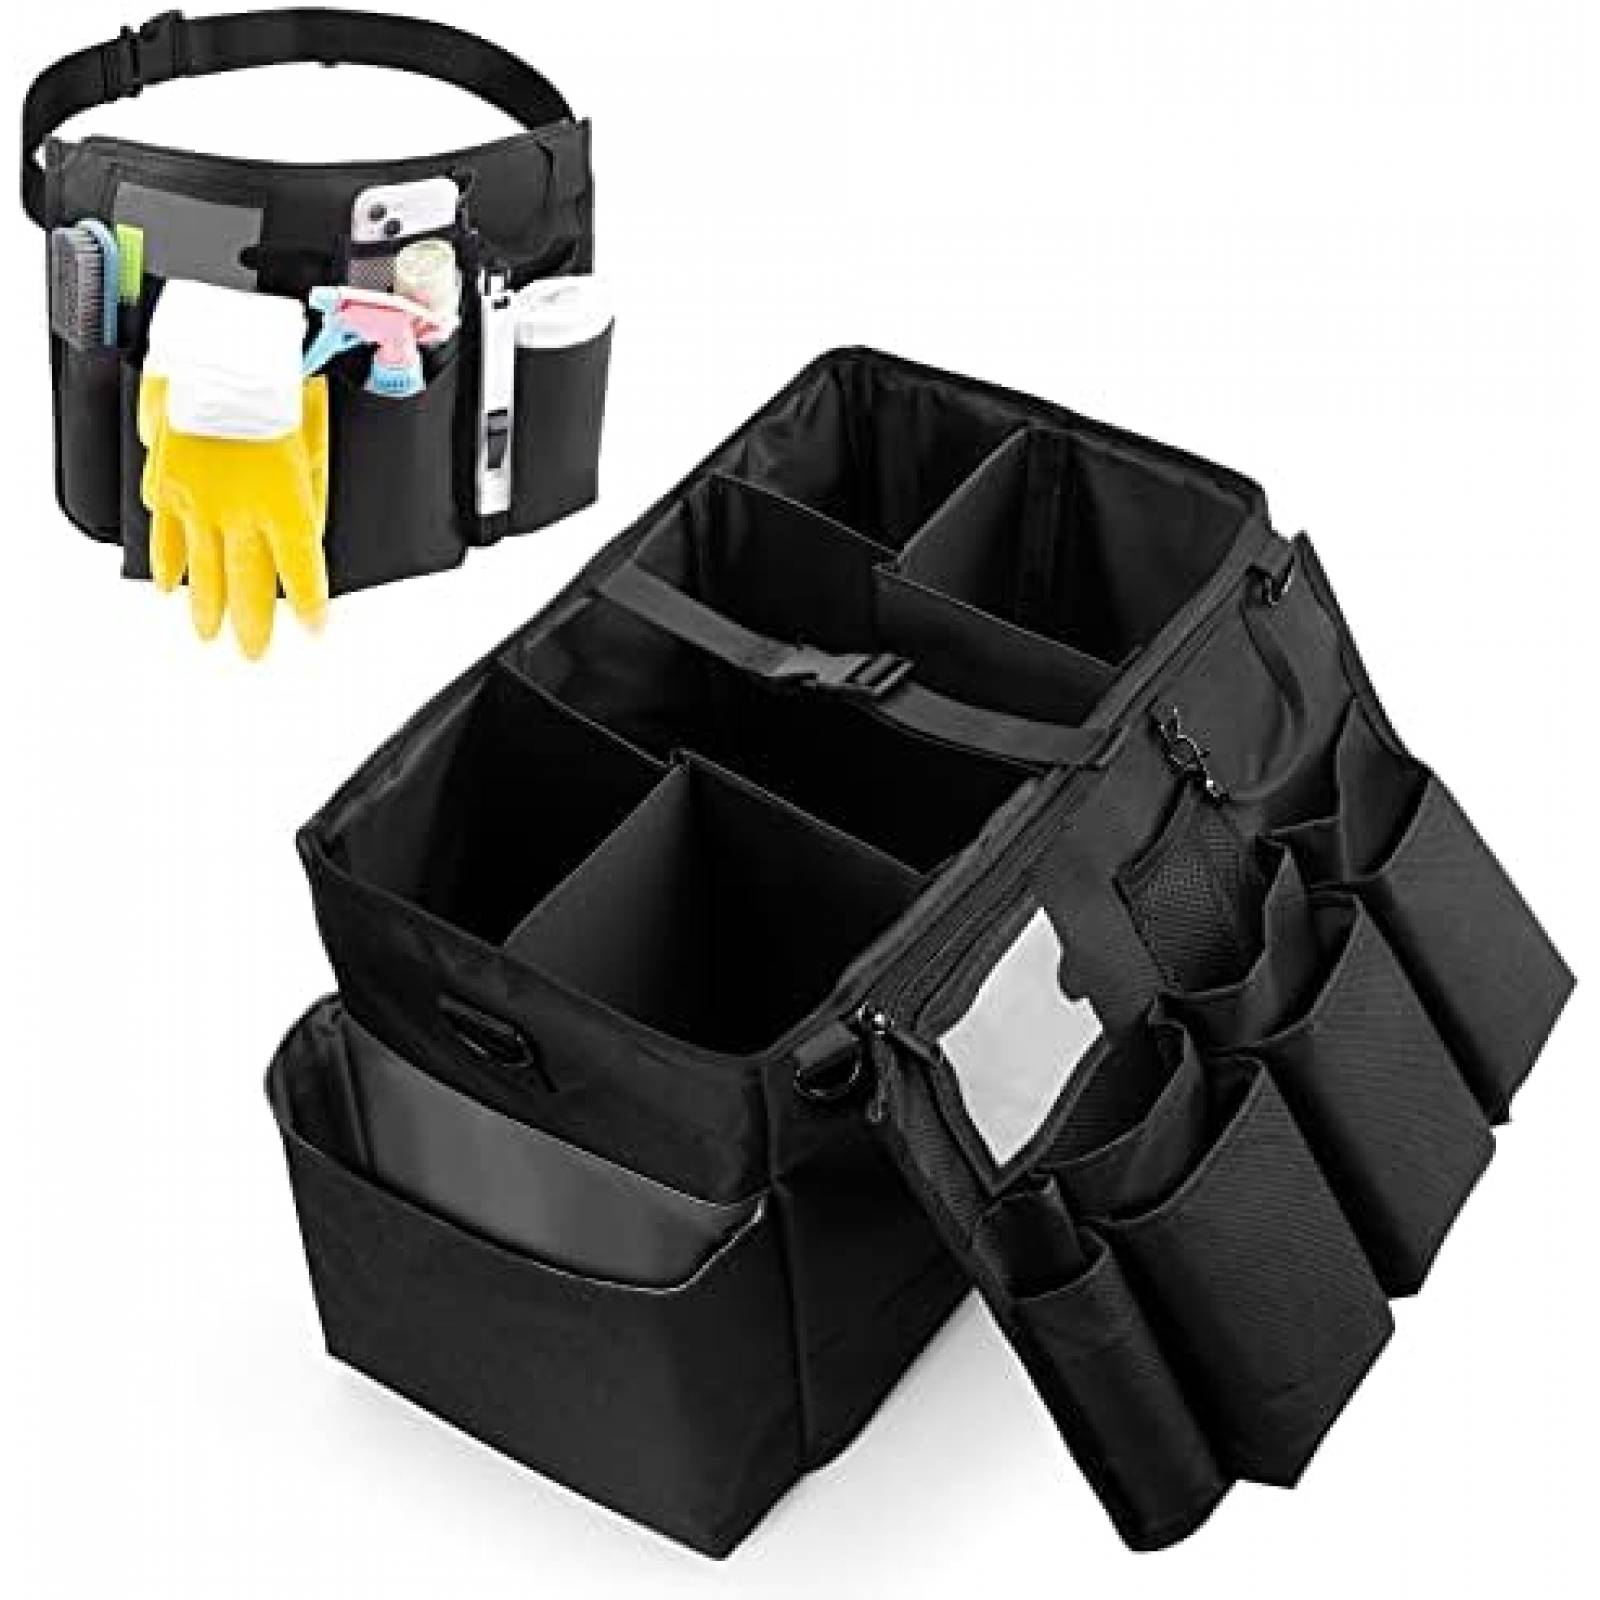  Organizador de limpieza con asa, bolsa de limpieza portátil  para suministros de limpieza, bolsa de limpieza con correas de hombro y  cintura, bolsa de herramientas organizadora debajo del fregadero con  múltiples